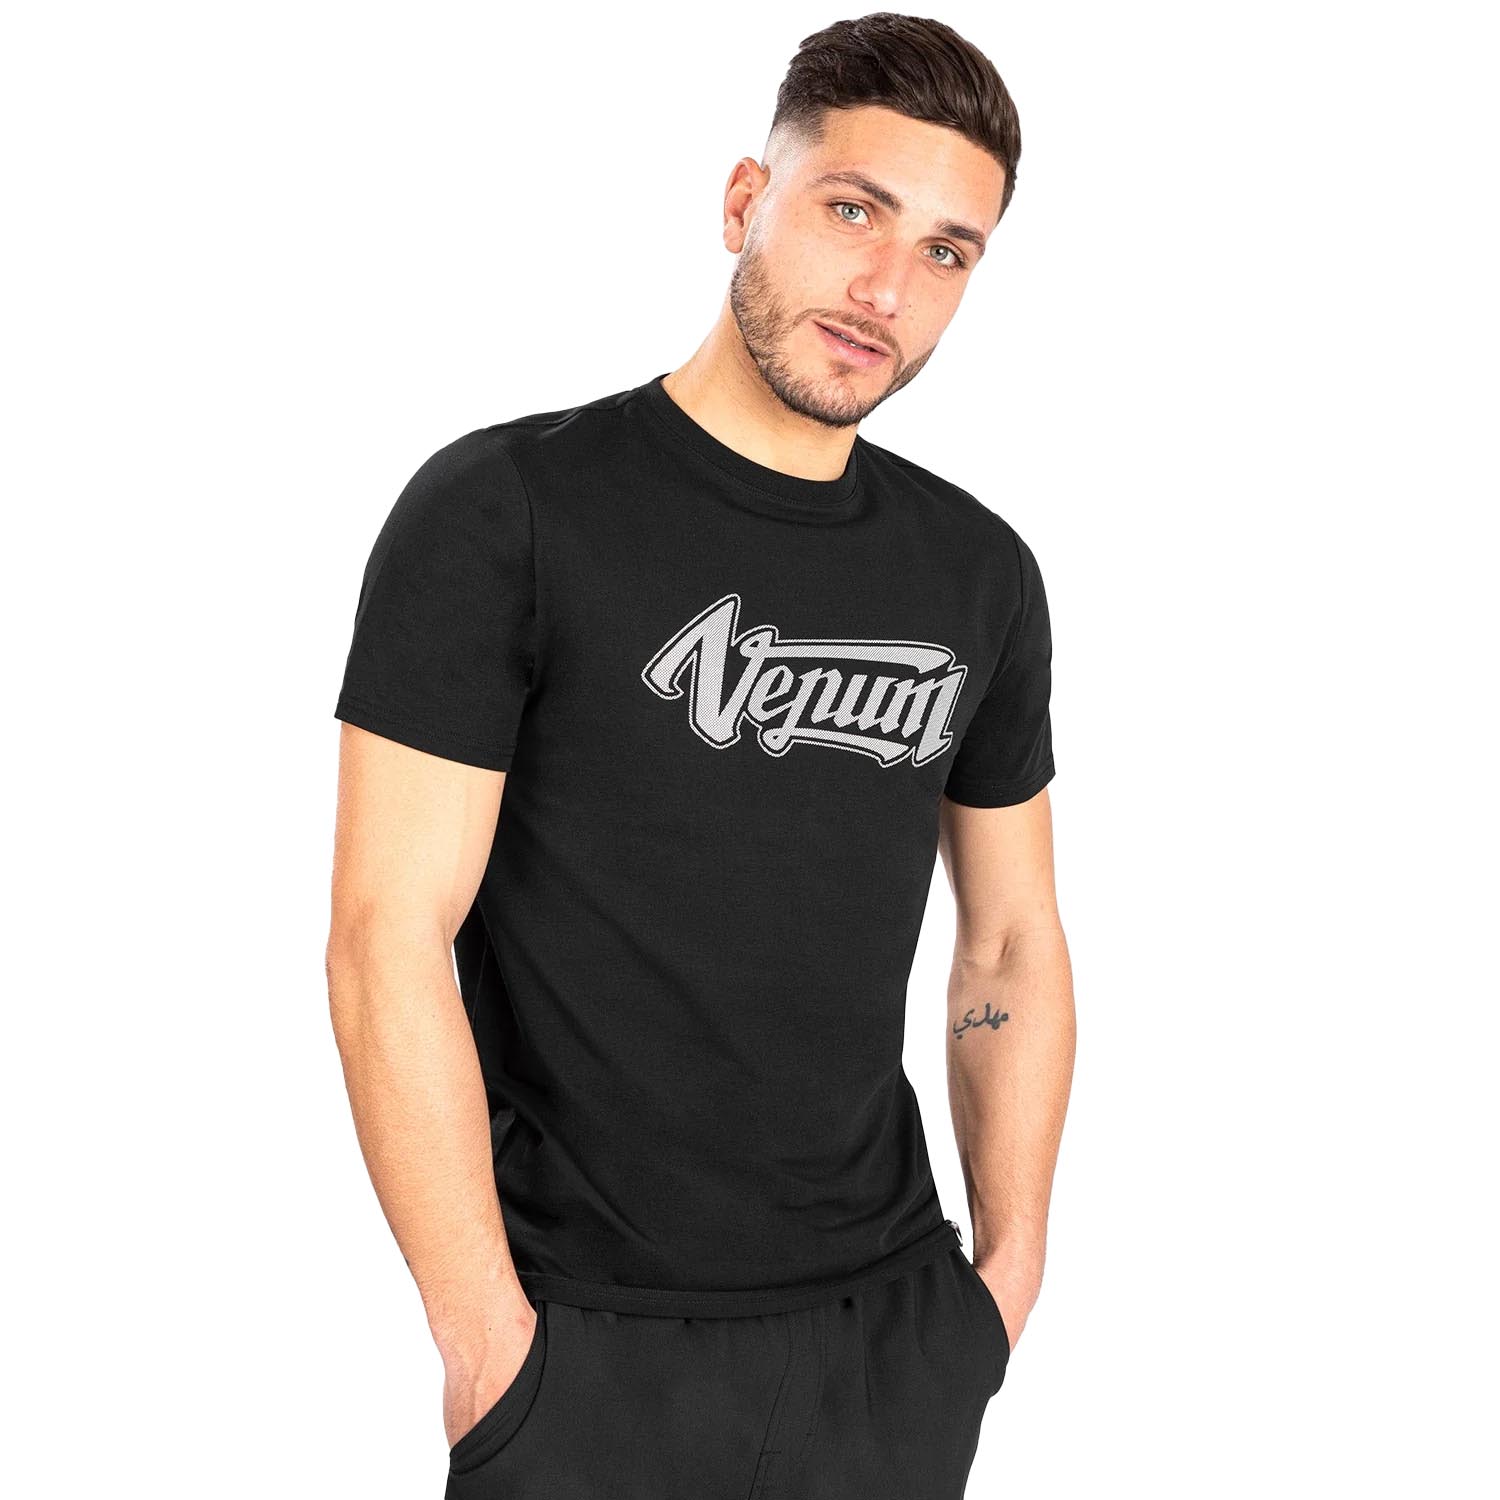 VENUM T-Shirt, Absolute 2.0, schwarz-silber